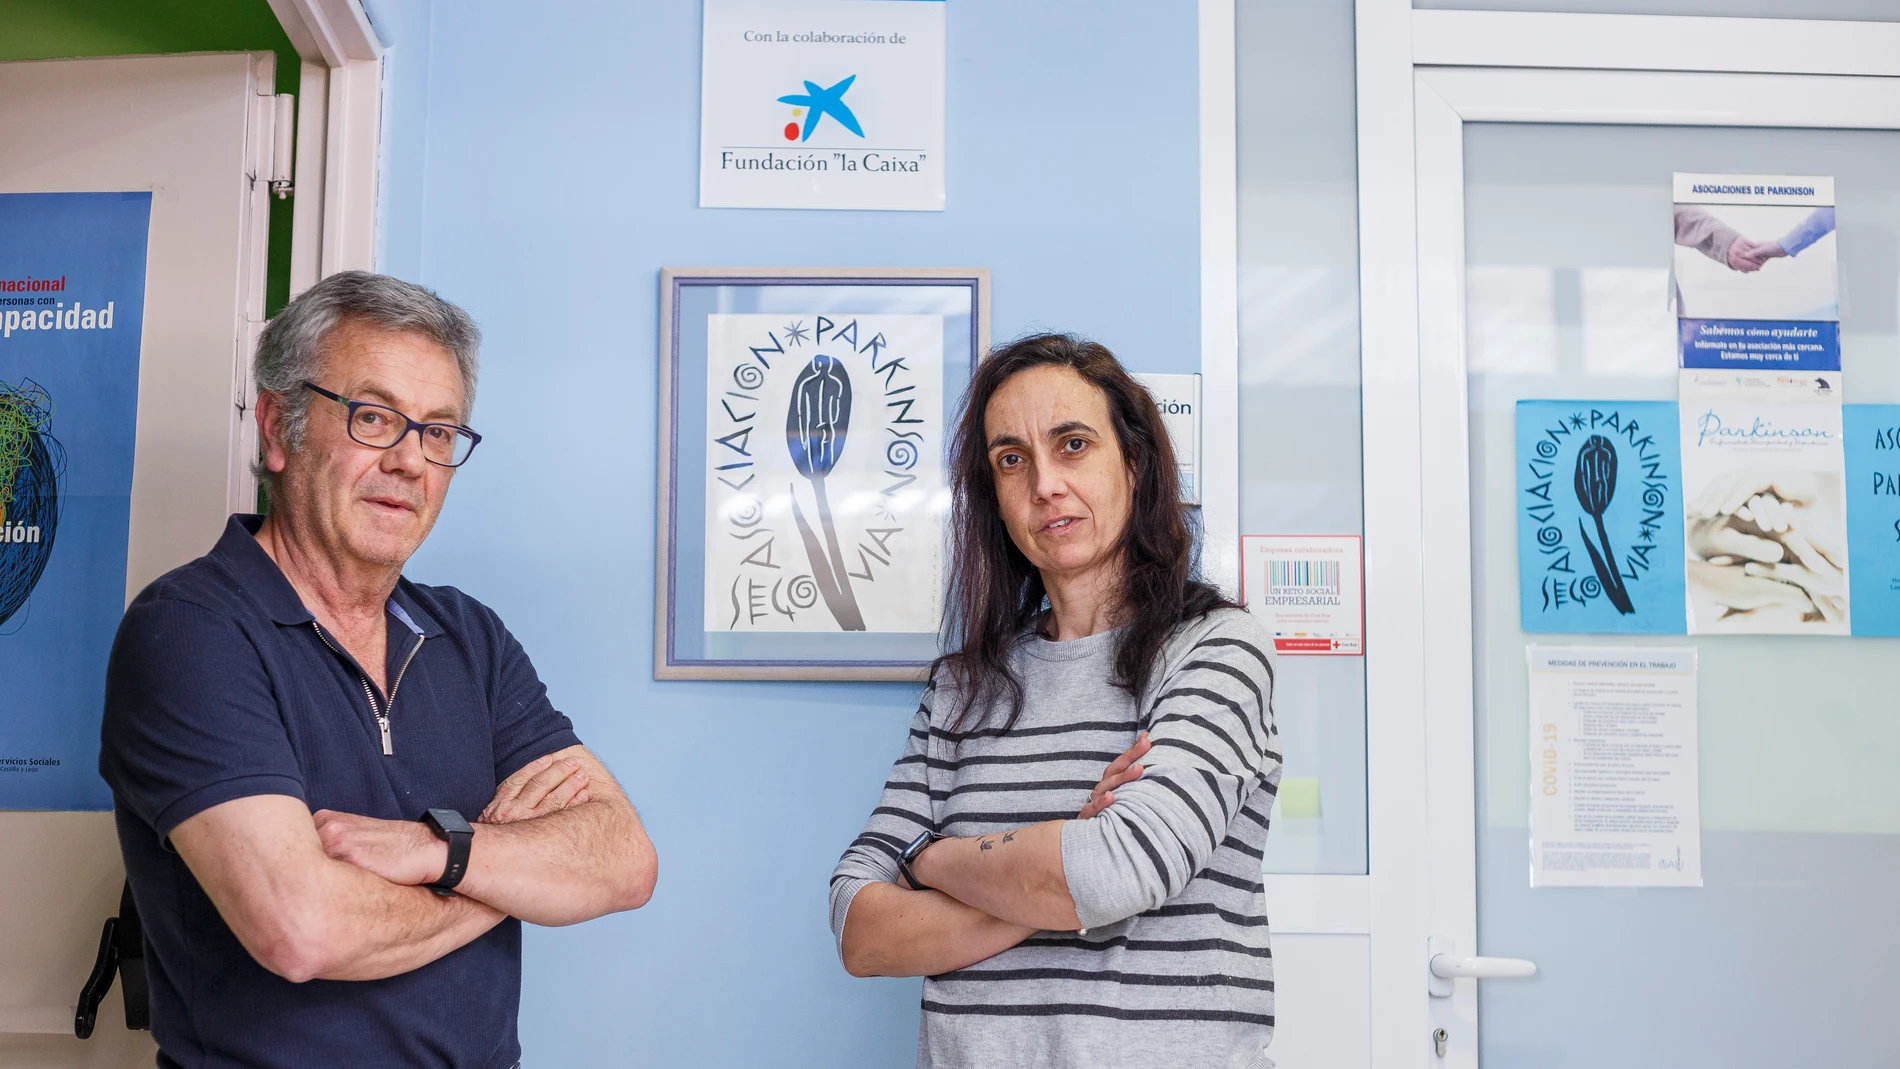  El presidente de la Asociación de enfermos de Parkinson de Segovia, Javier Herrero; y la gerente, Teresa Martín